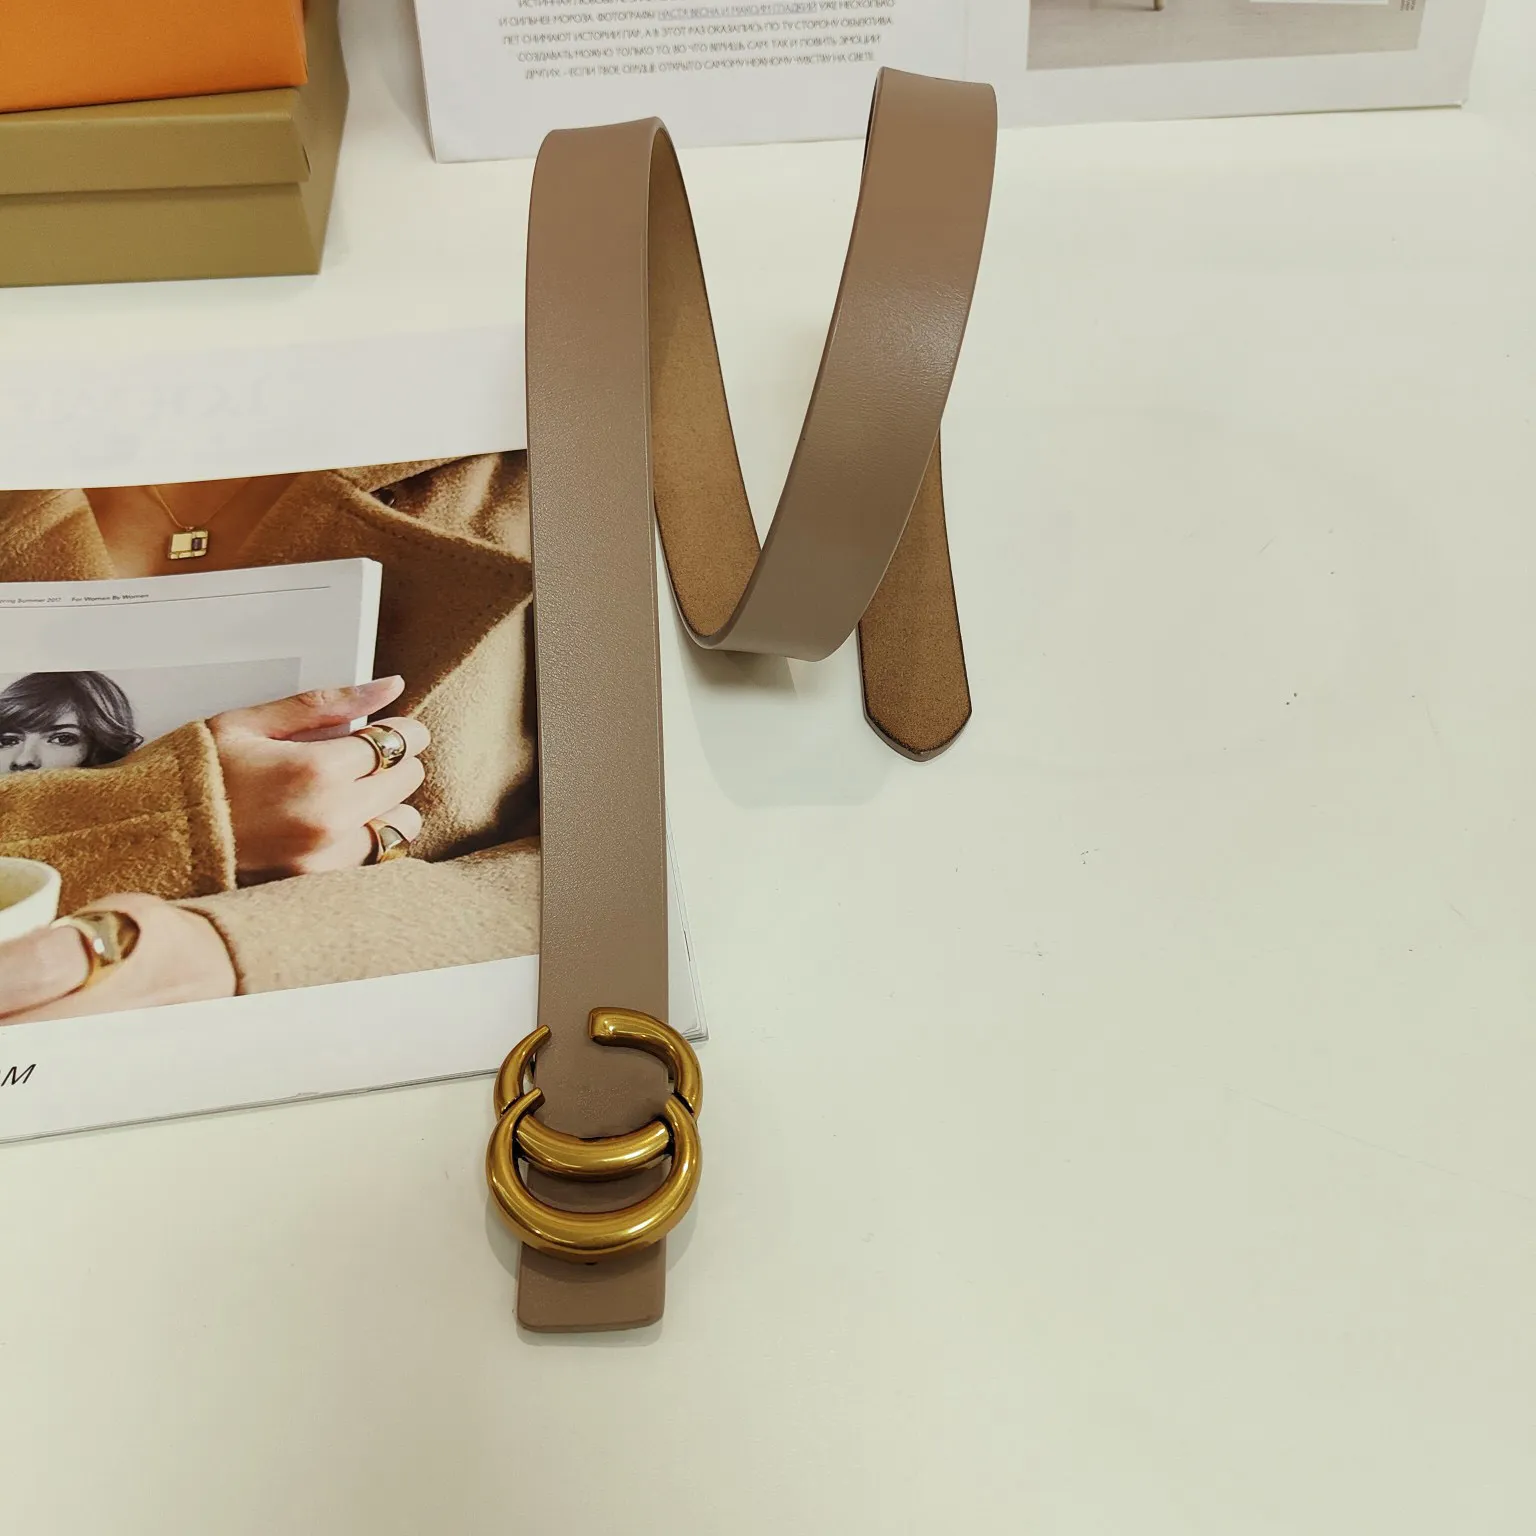 Cinto de designer de luxo Vintage Pin agulha Fivela designers Beltss Clássico cor sólida Cintos com letras douradas para mulheres 8 cores Largura 3,0 cm tamanho 95-115 Casual agradável